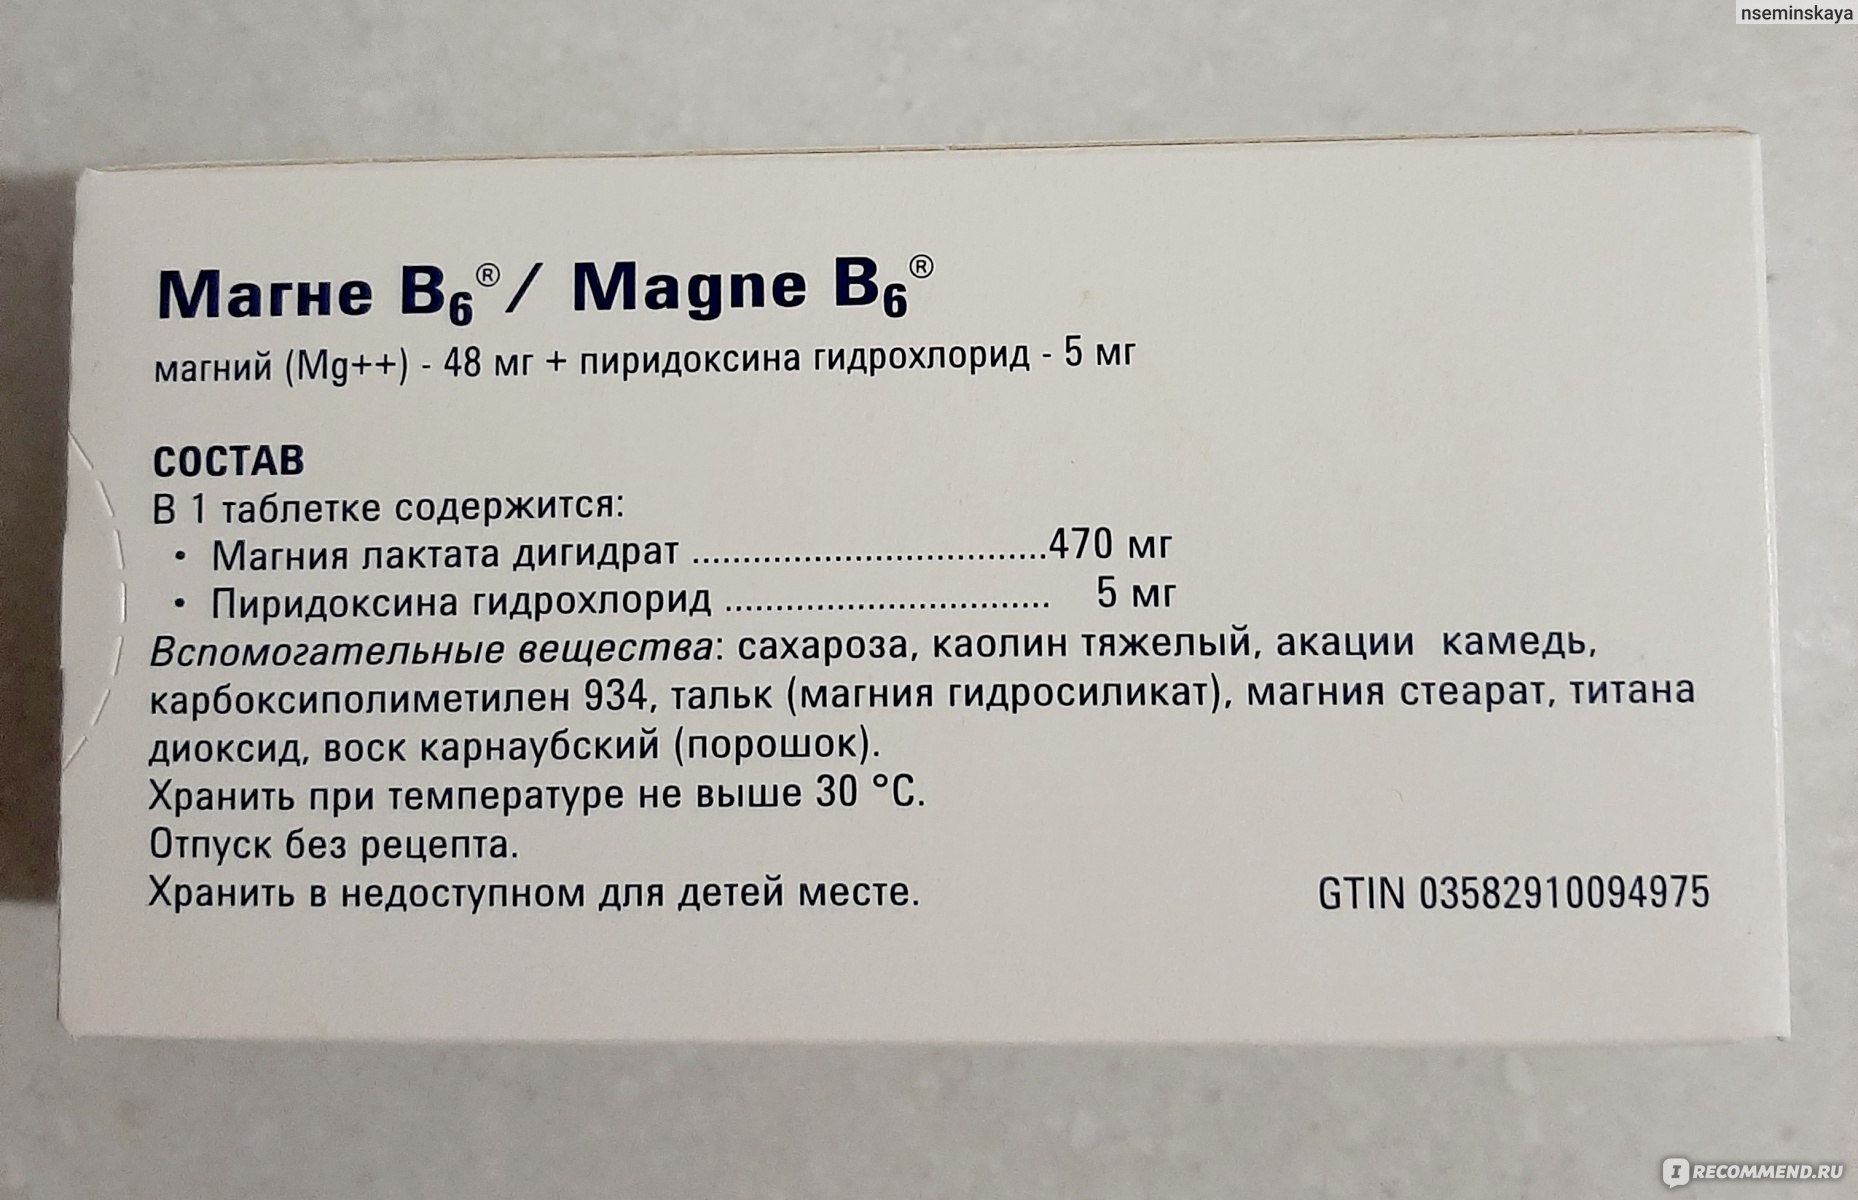 Сколько надо пить магния в день. Магний б6 + пиридоксина гидрохлорид. Магне в6 магний пиридоксина гидрохлорид. Магний б6 (магний лактат+пиридоксина гидрохлорид. Магния лактат 470 мг пиридоксина гидрохлорид 5 мг.